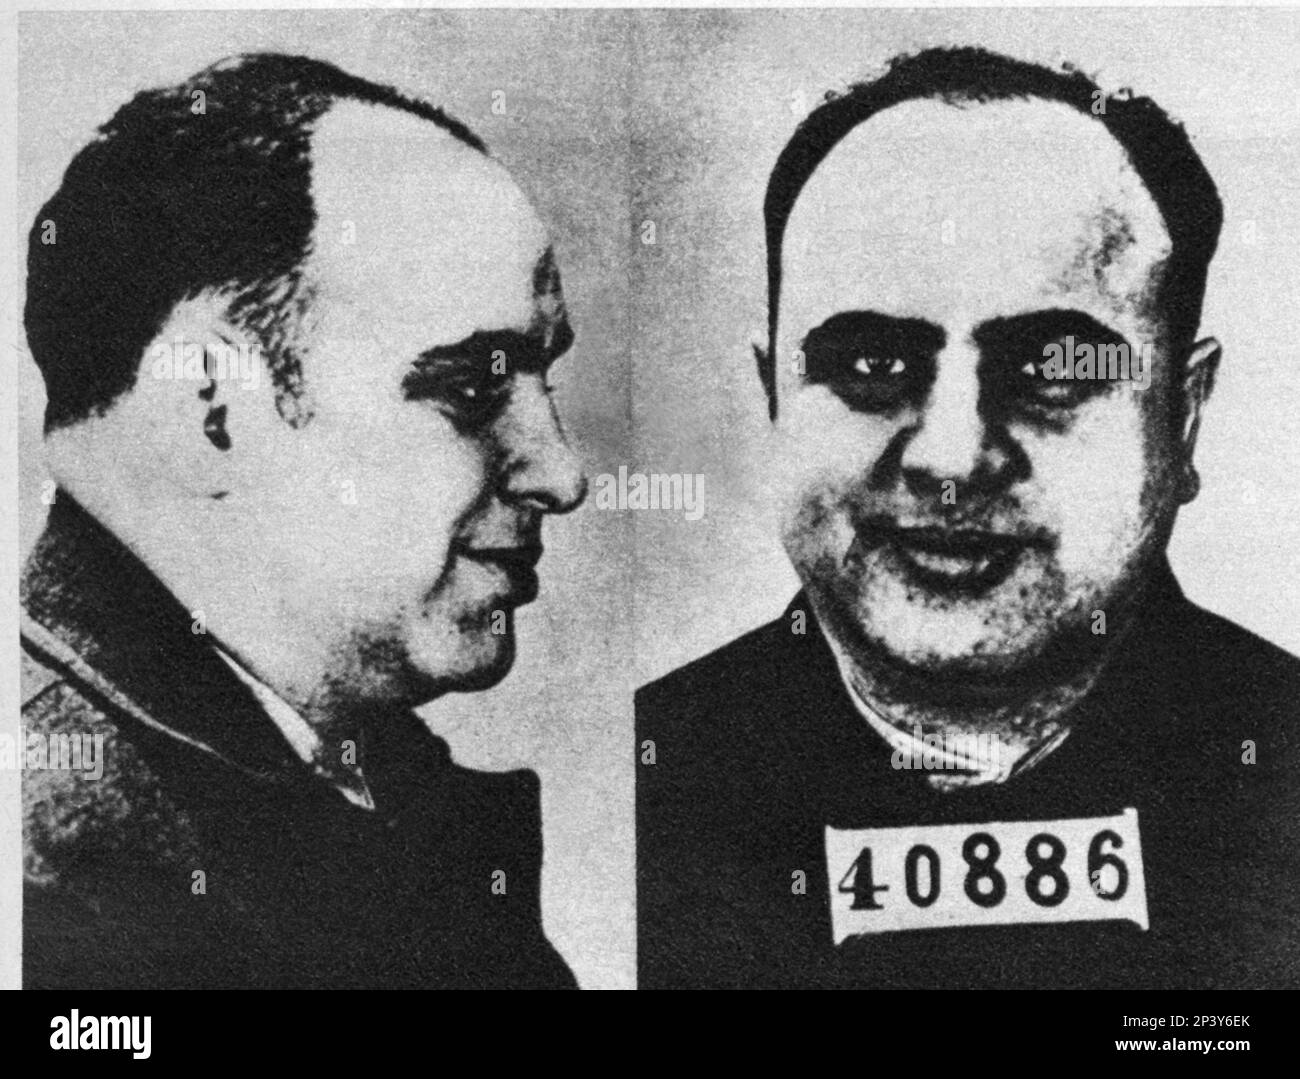 1939 : il famoso gangstern al CAPONE ( Alphonse Caponi , New York , 1899 - Palm Spring 1947 ) imprigionato ad Alcatraz , San Francisco - FOTO SEGNALETICA - photobooth - carcerato - incarcerato - delinquente - mafia - mafioso - profilo --- Archivio GBB Foto Stock